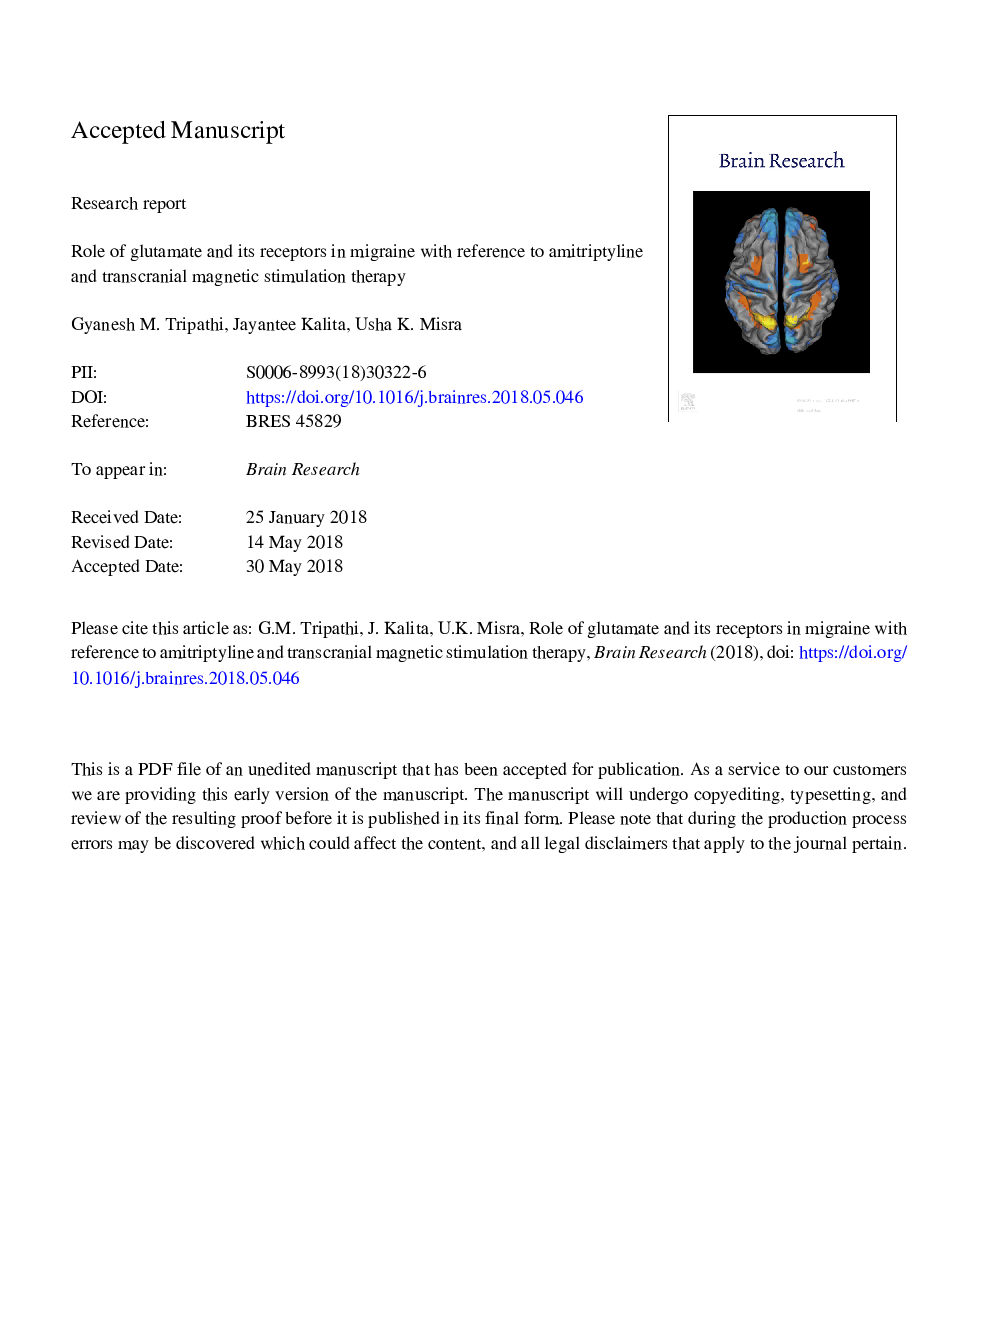 نقش گلوتامات و گیرنده های آن در میگرن با توجه به آمیتریپتییلین و درمان تحریک مغناطیسی ترانس مغناطیسی 